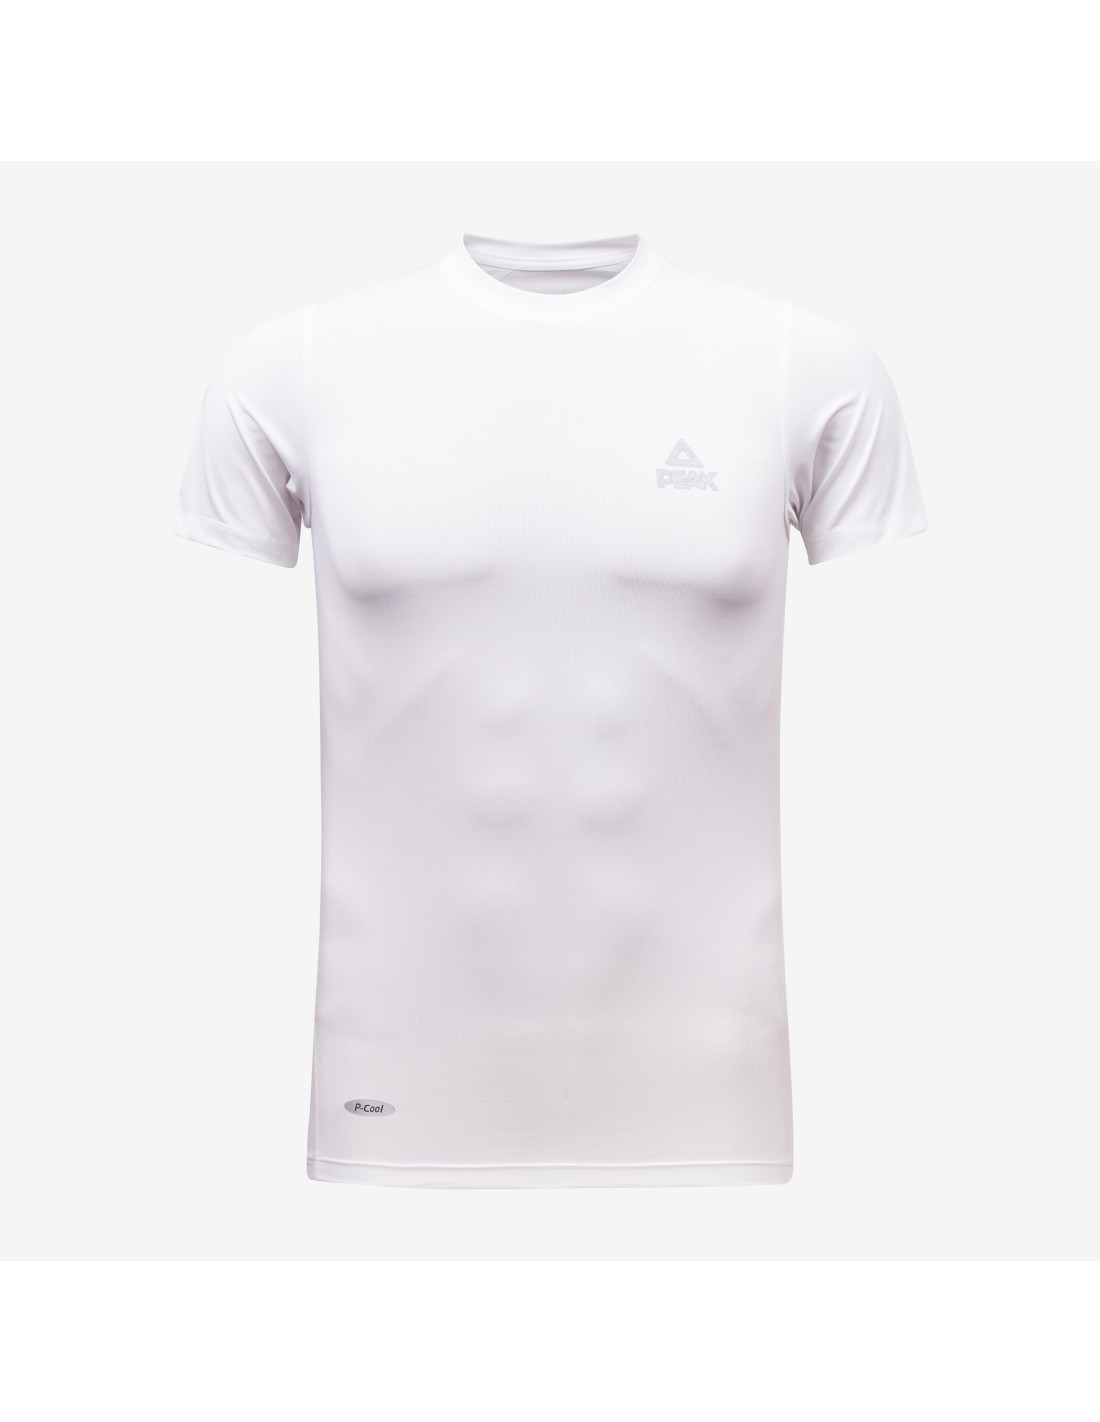 Nike Cool T-Shirt de compression manches courtes Homme